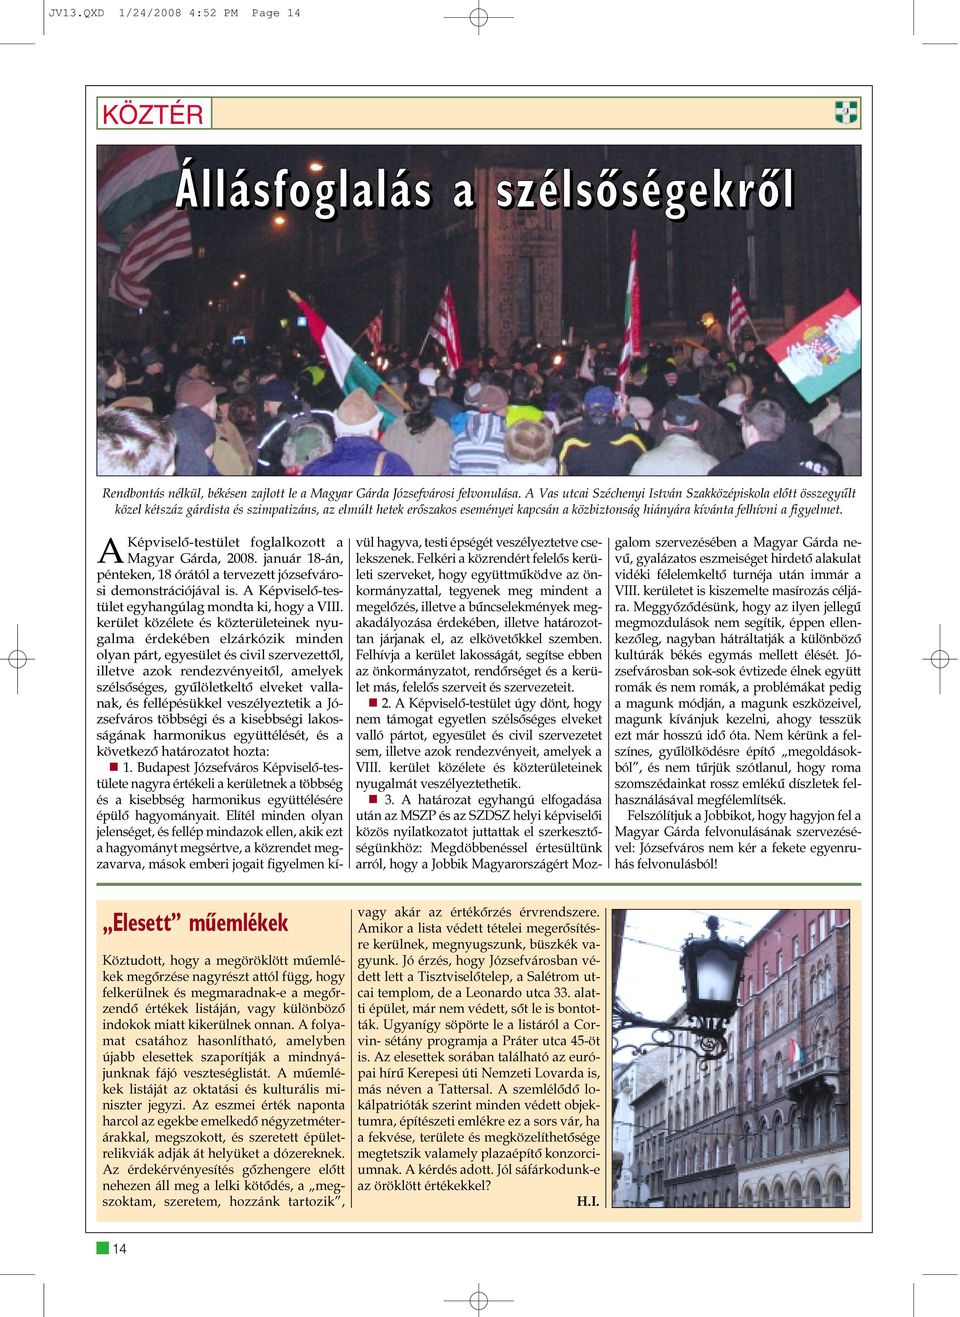 AKépviselõ-testület foglalkozott a Magyar Gárda, 2008. január 18-án, pénteken, 18 órától a tervezett józsefvárosi demonstrációjával is. A Képviselõ-testület egyhangúlag mondta ki, hogy a VIII.